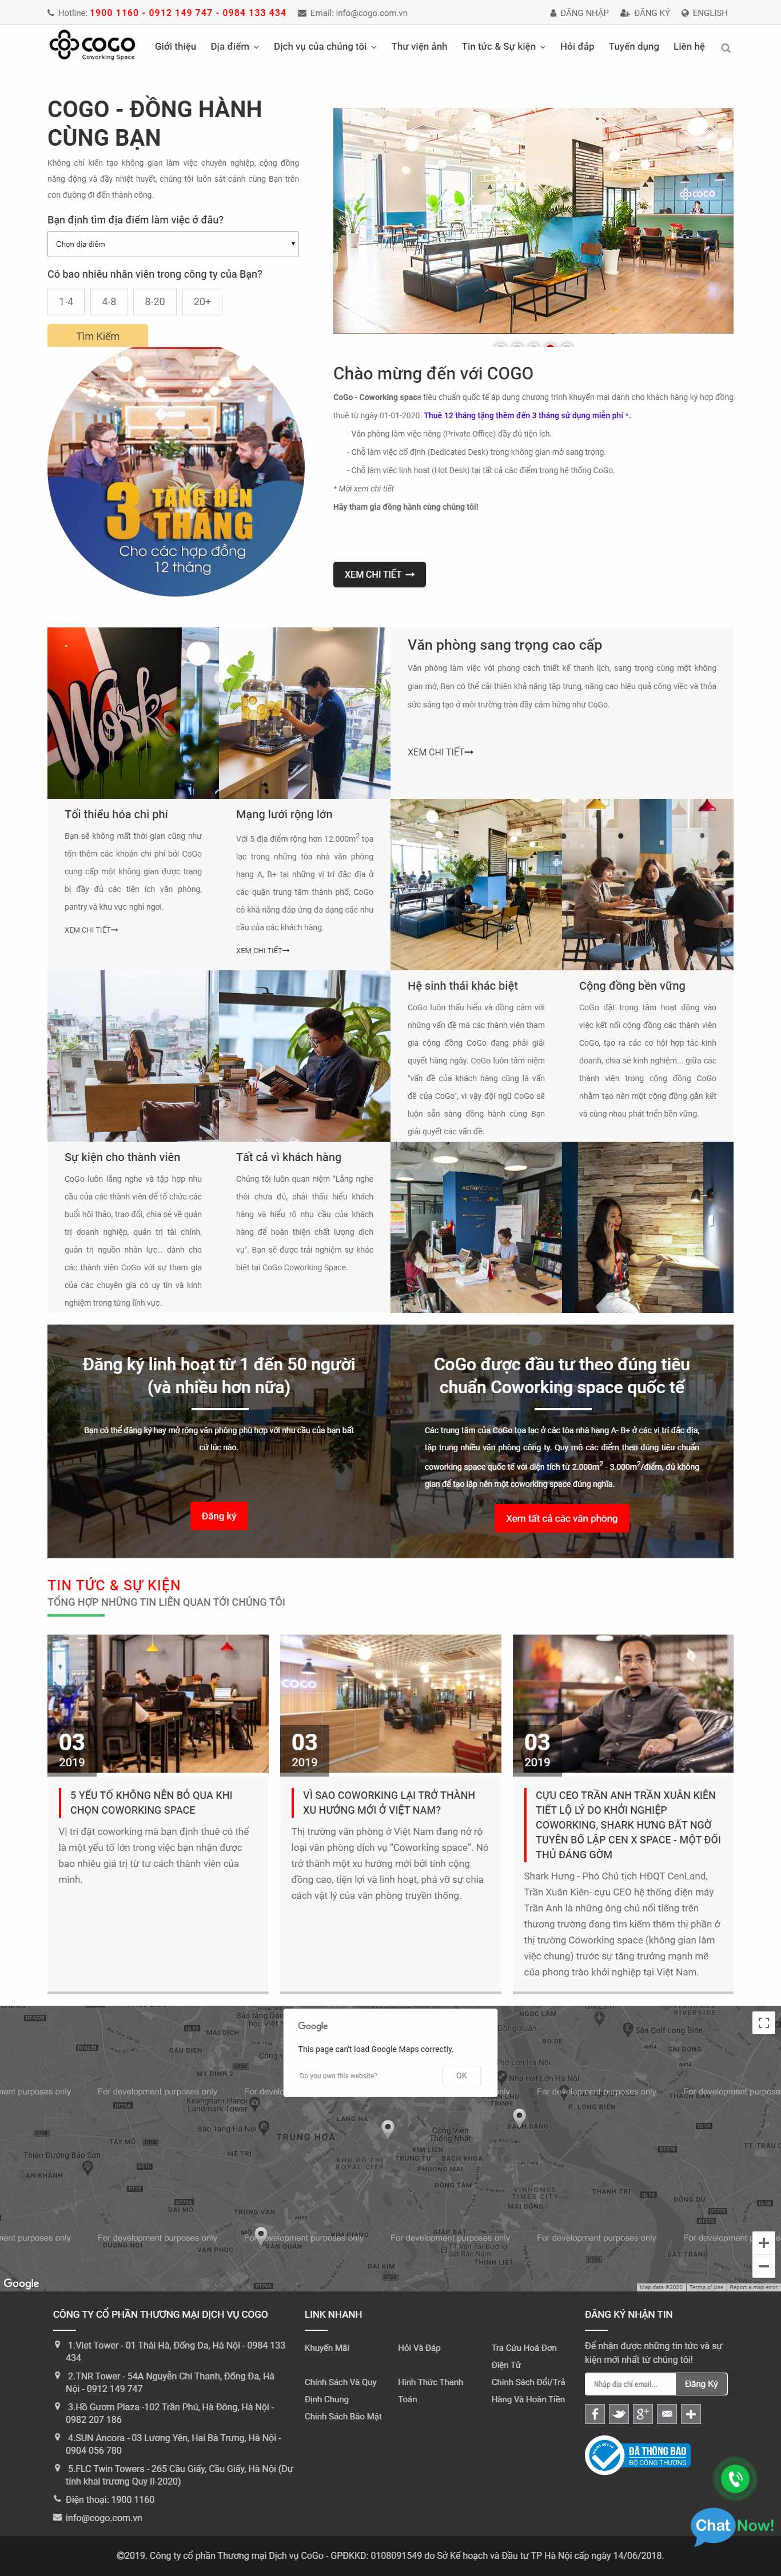 Thiết kế Website văn phòng ảo - cogo.vn